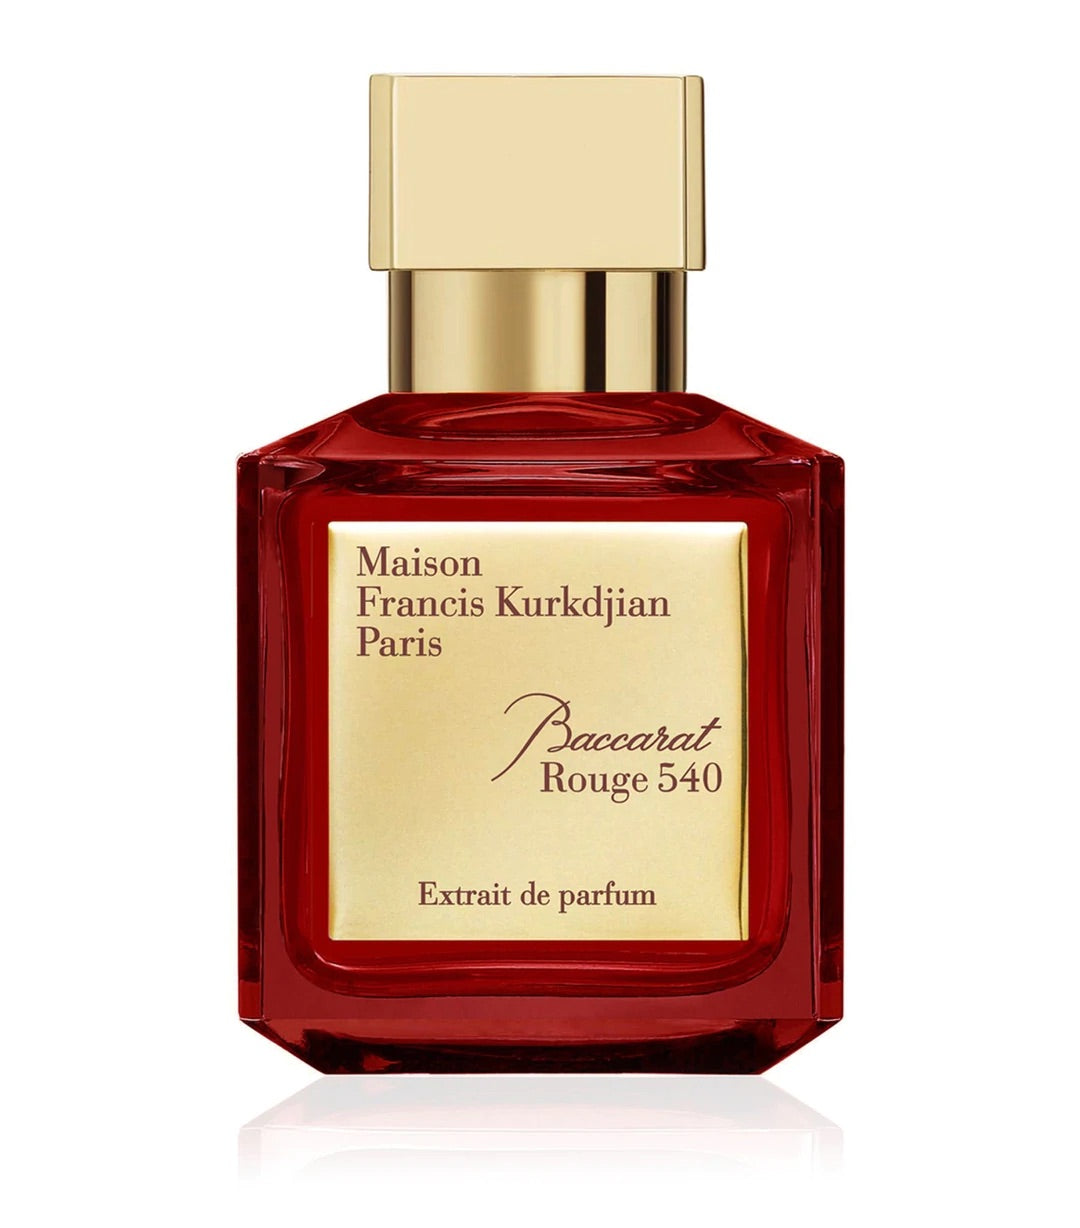 Maison Francis Kurkdjian Baccarat Rouge 540 Extrait De Parfum Samples